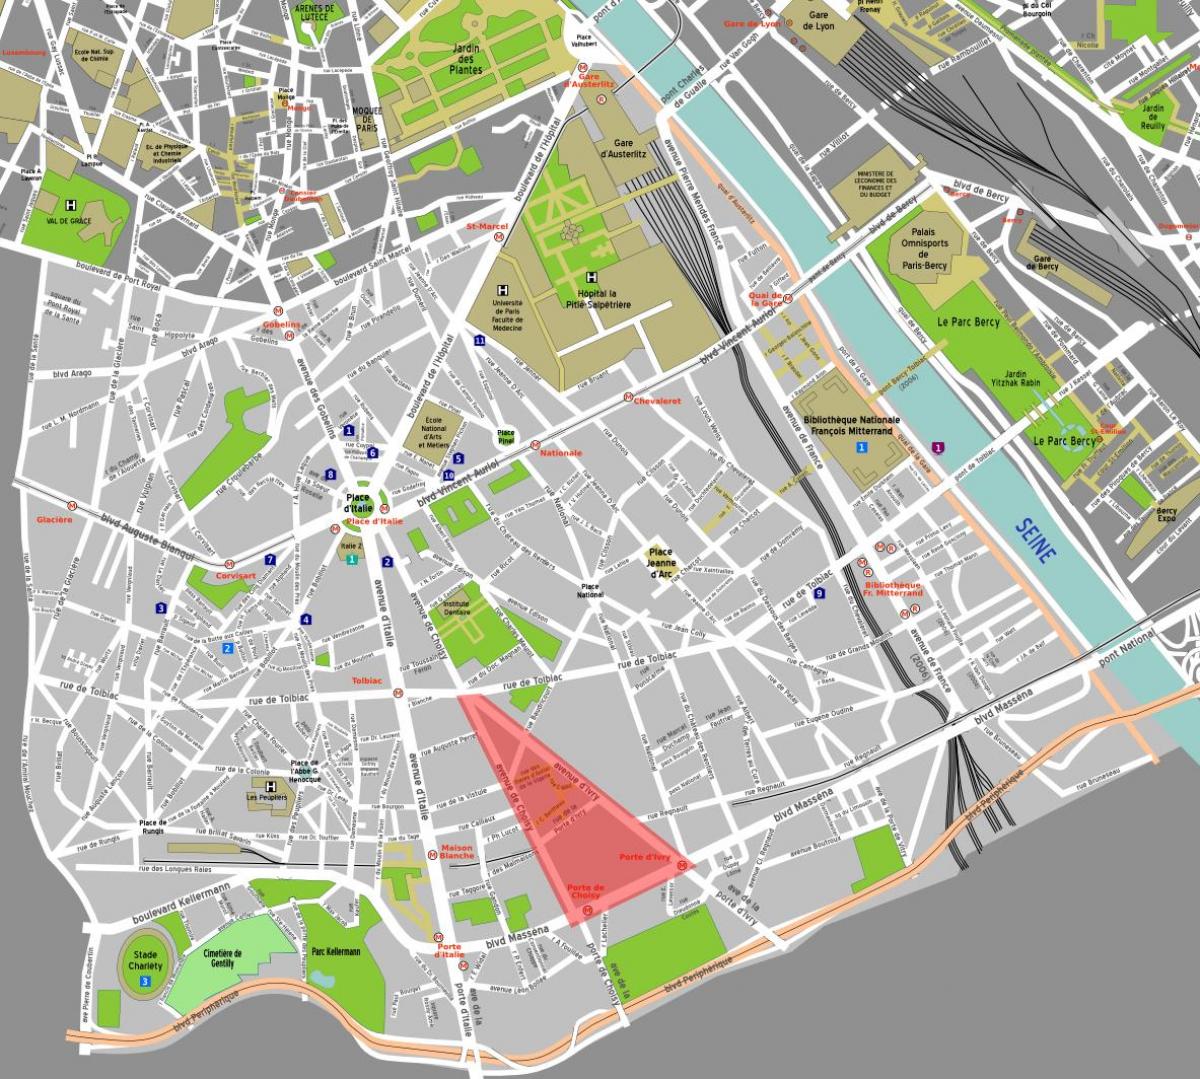 Mappa di Parigi chinatown 